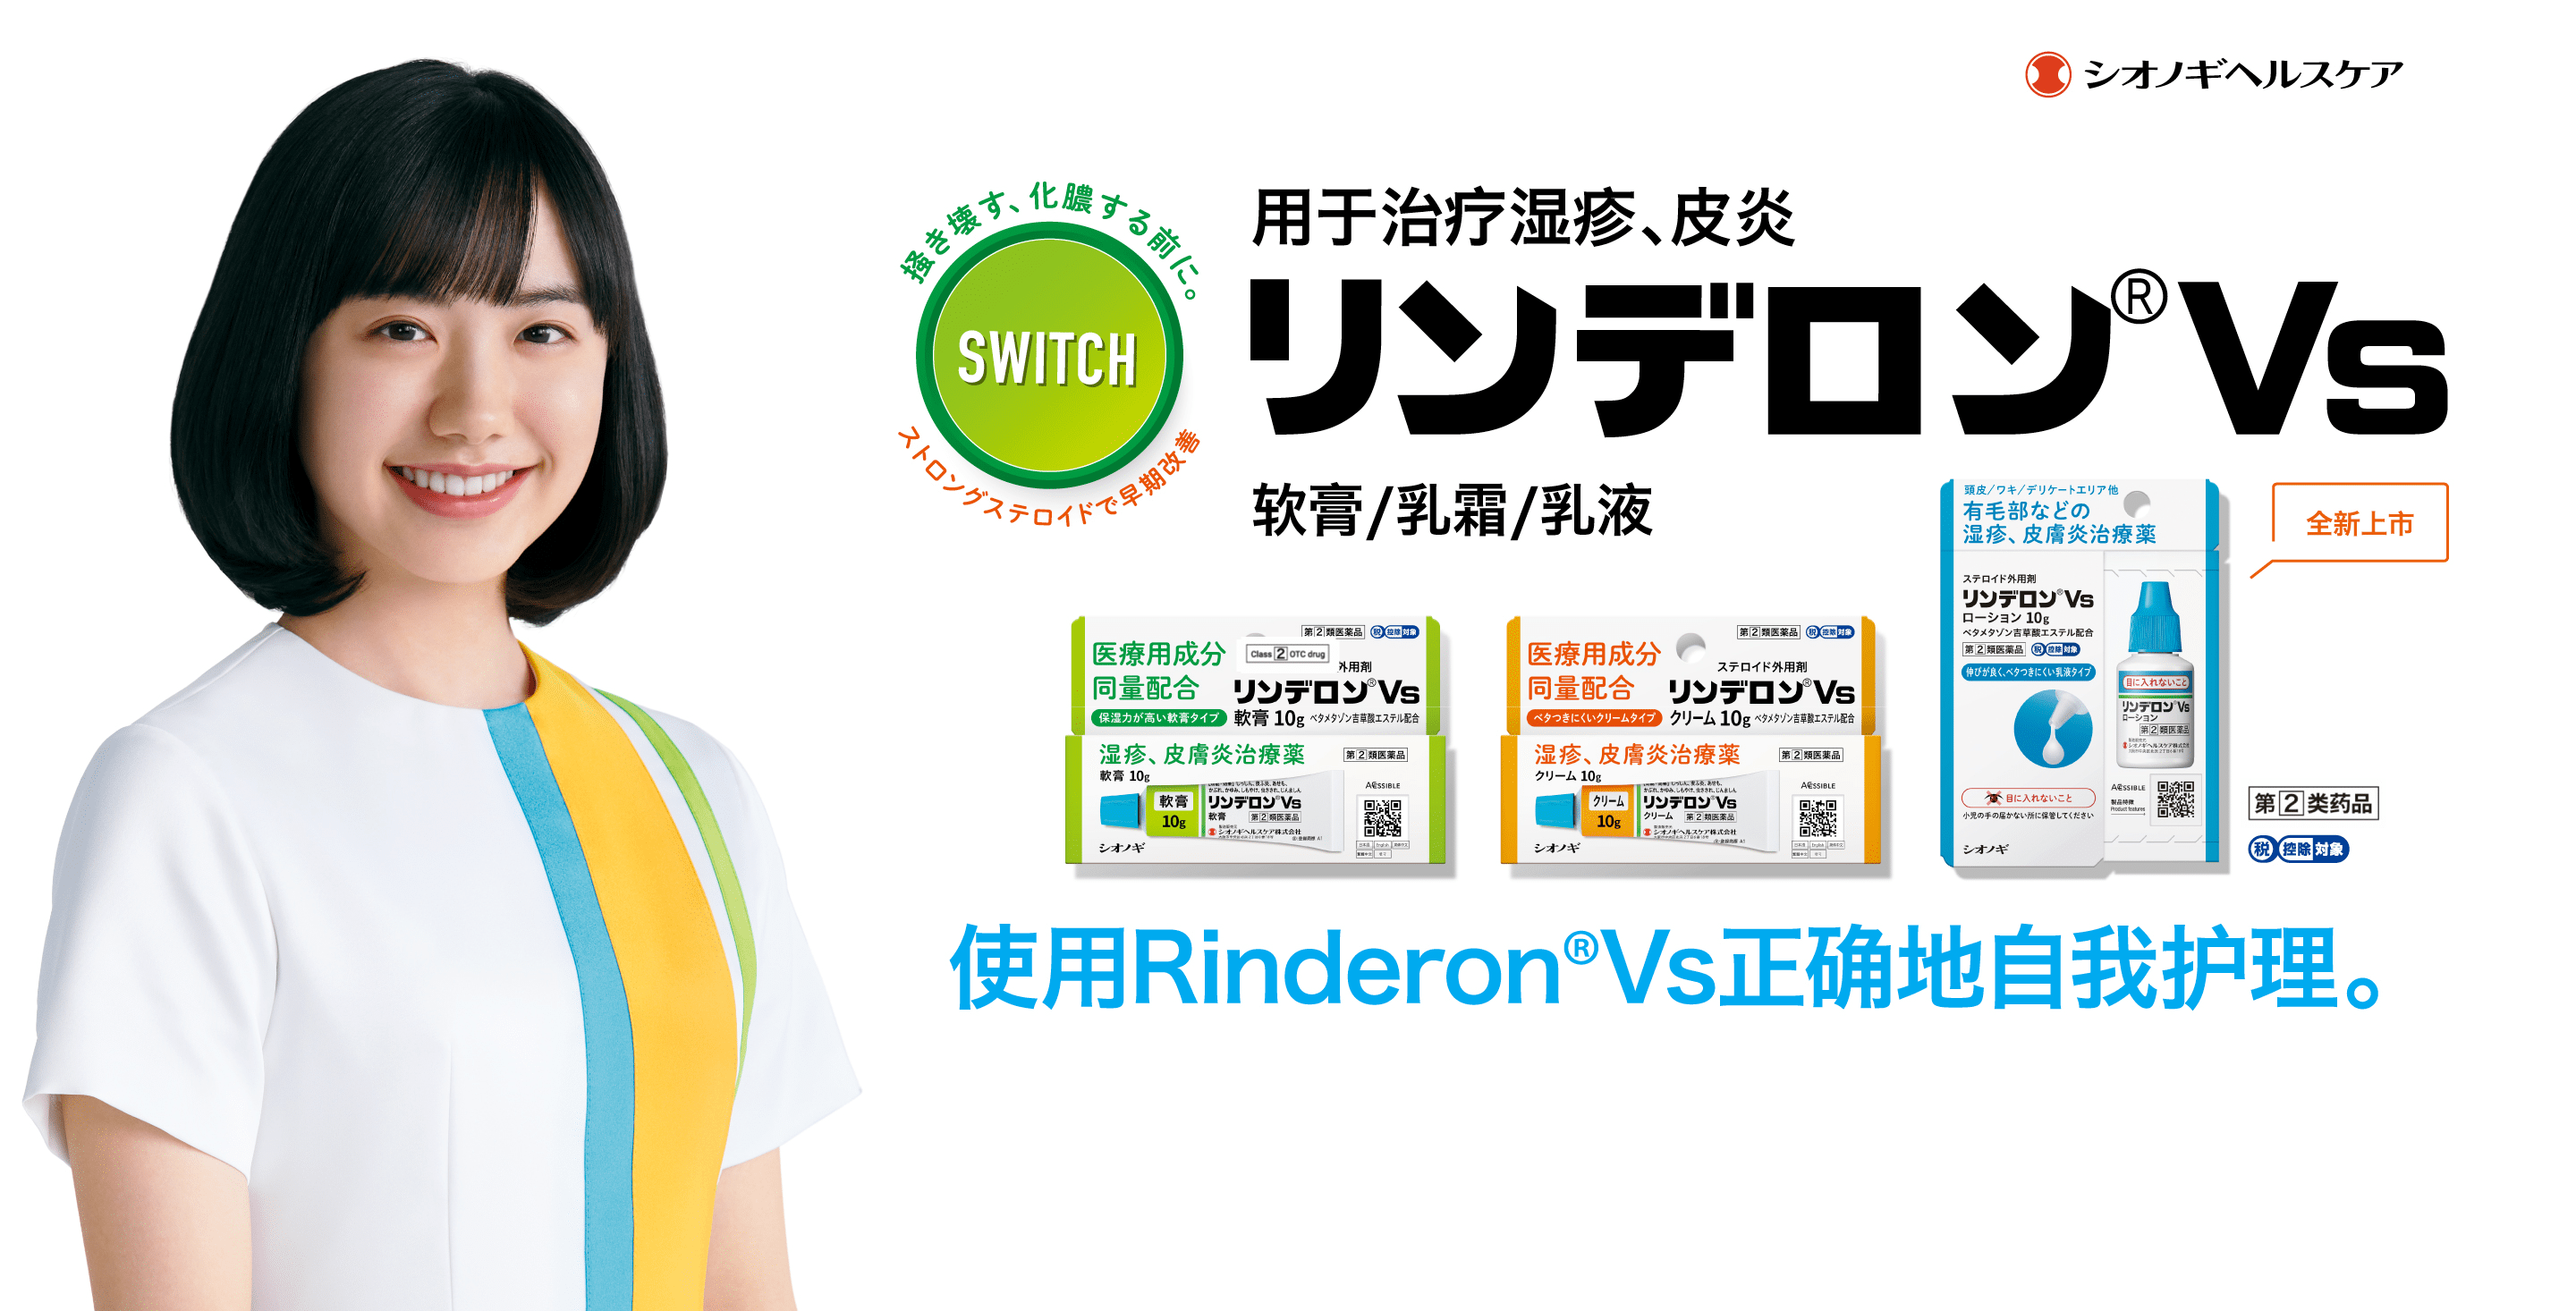 使用Rinderon®Vs正确地自我护理。用于治疗湿疹、皮炎/包含等量处方成分